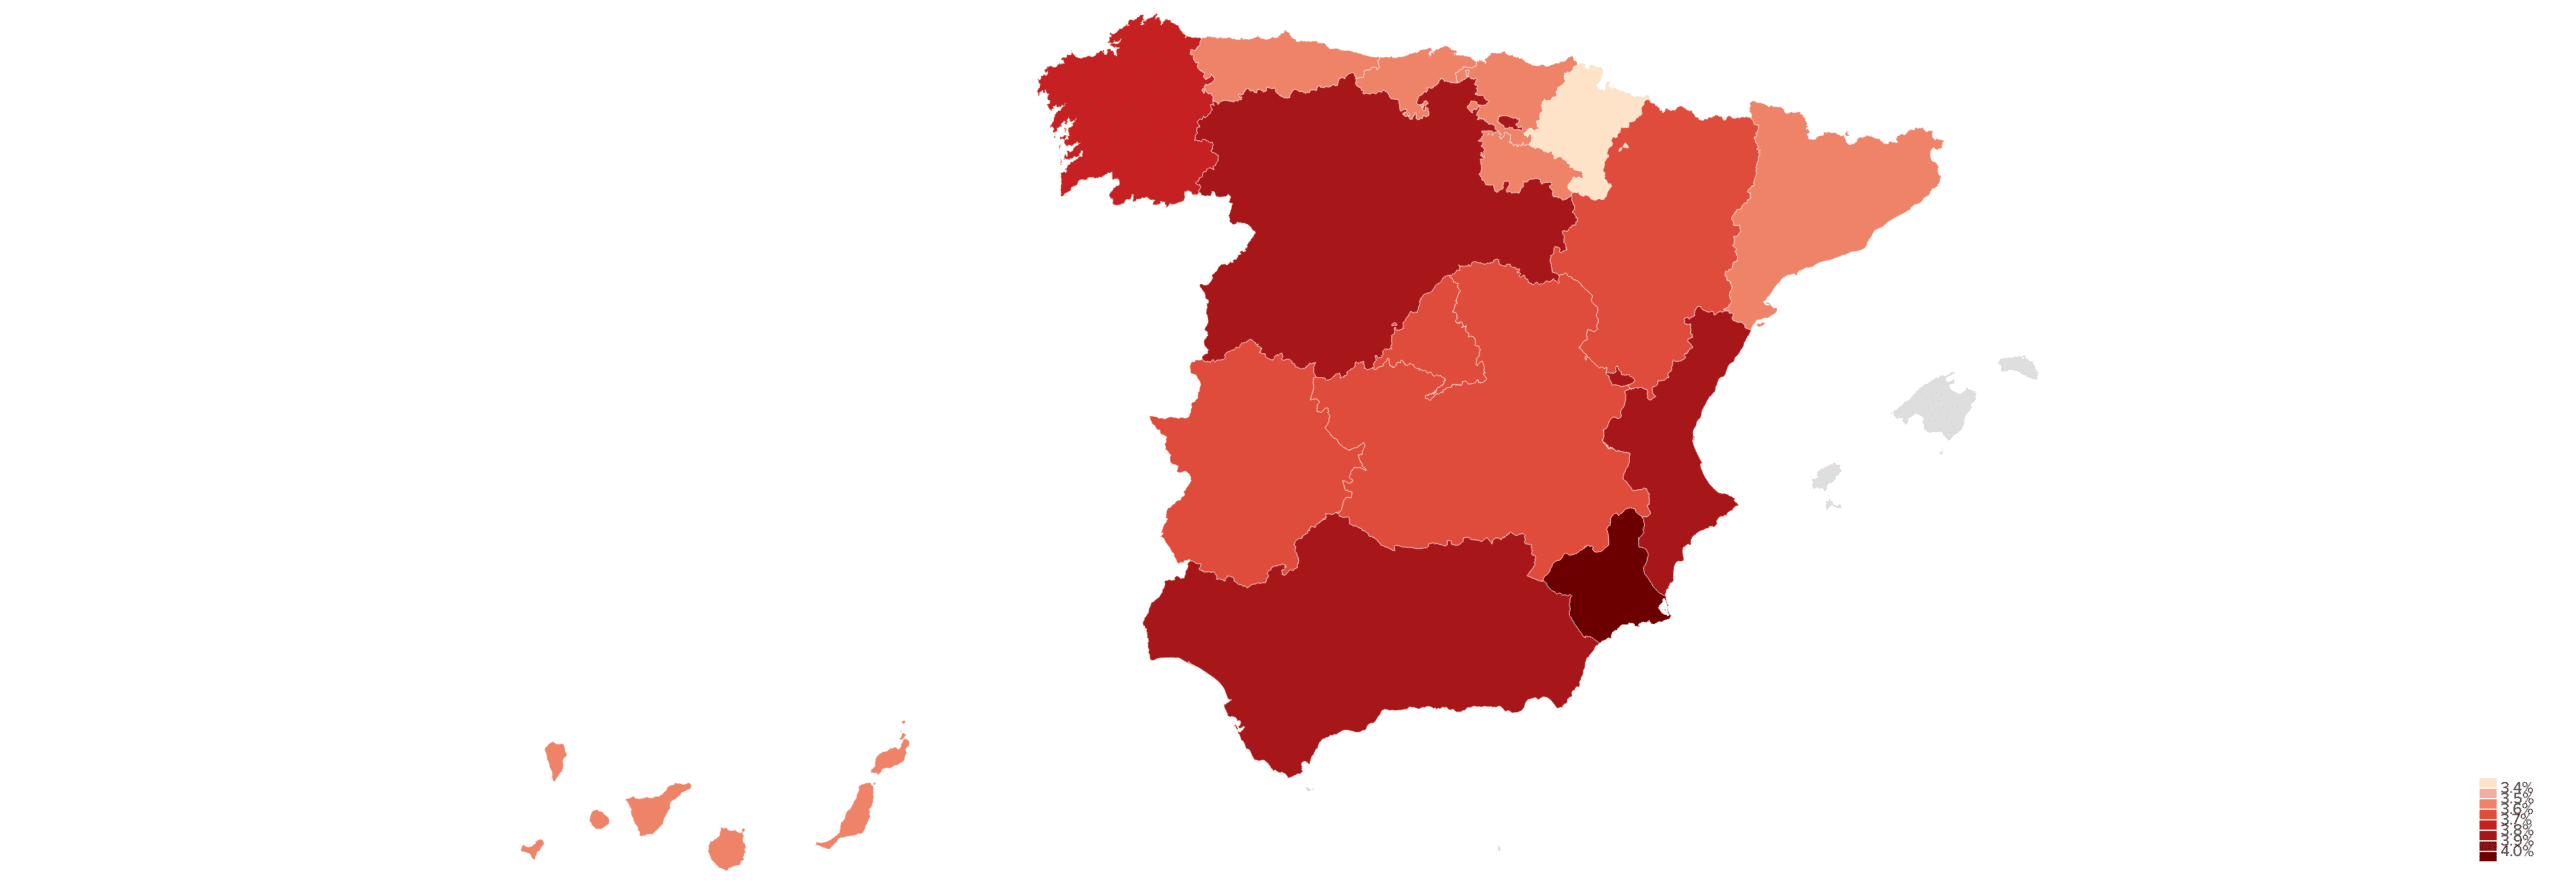 indice de riesgo por ciberamenazas avanzadas segun regiones en espana